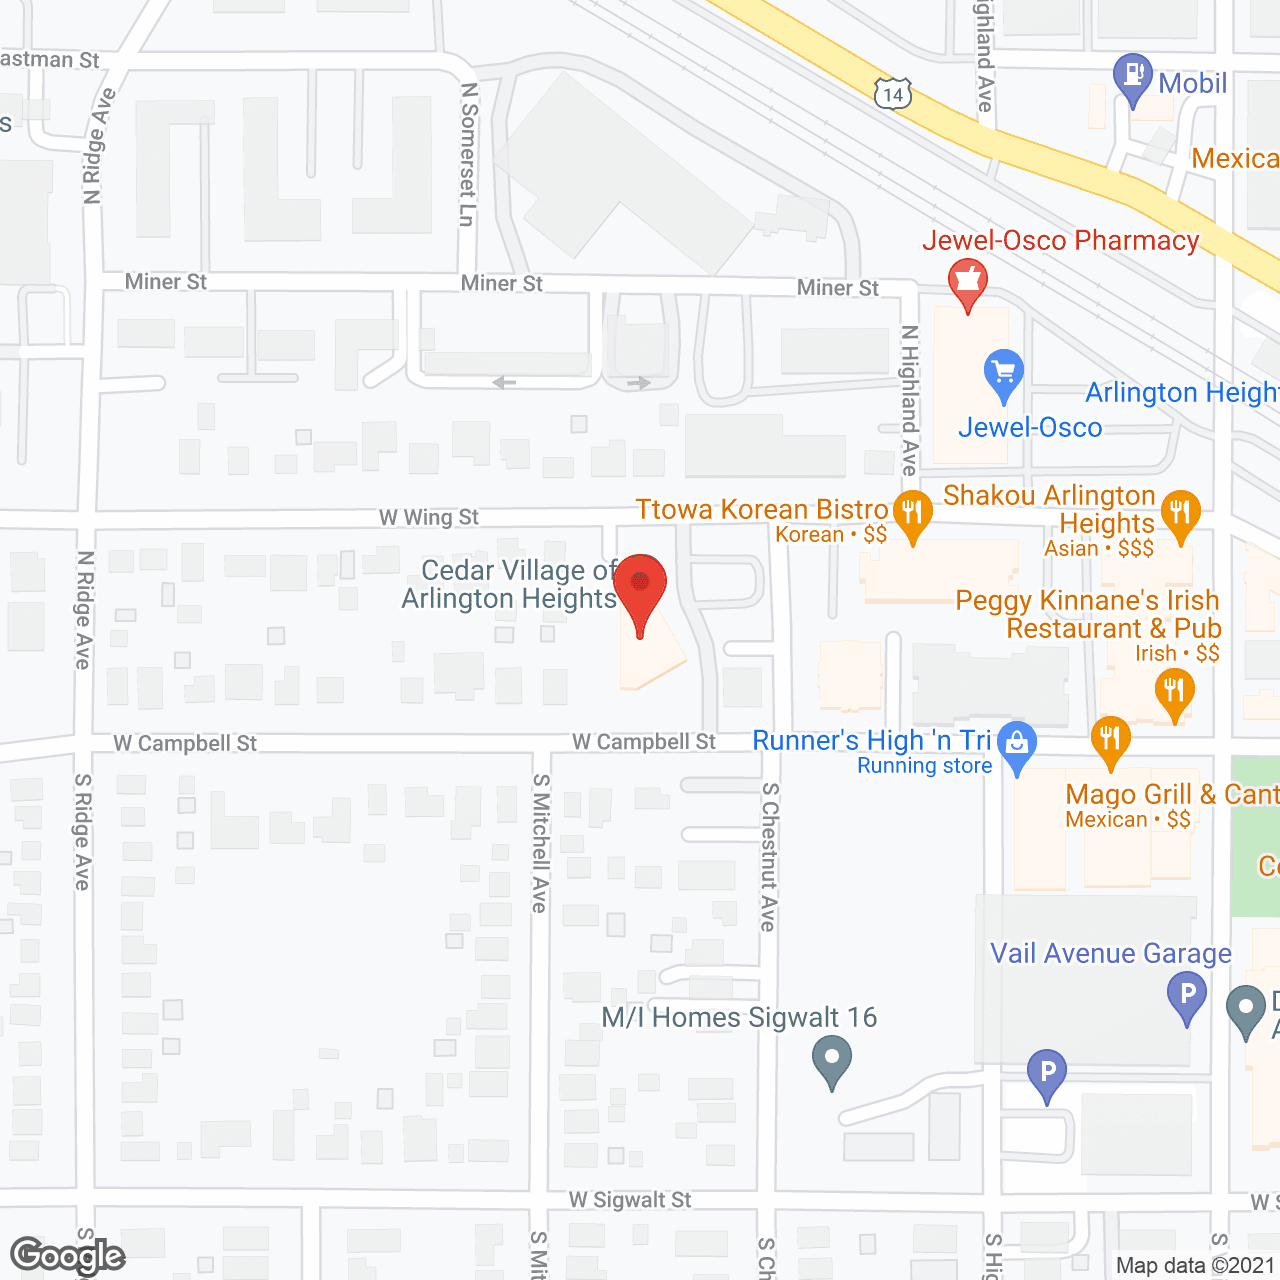 Cedar Village of Arlington Heights in google map